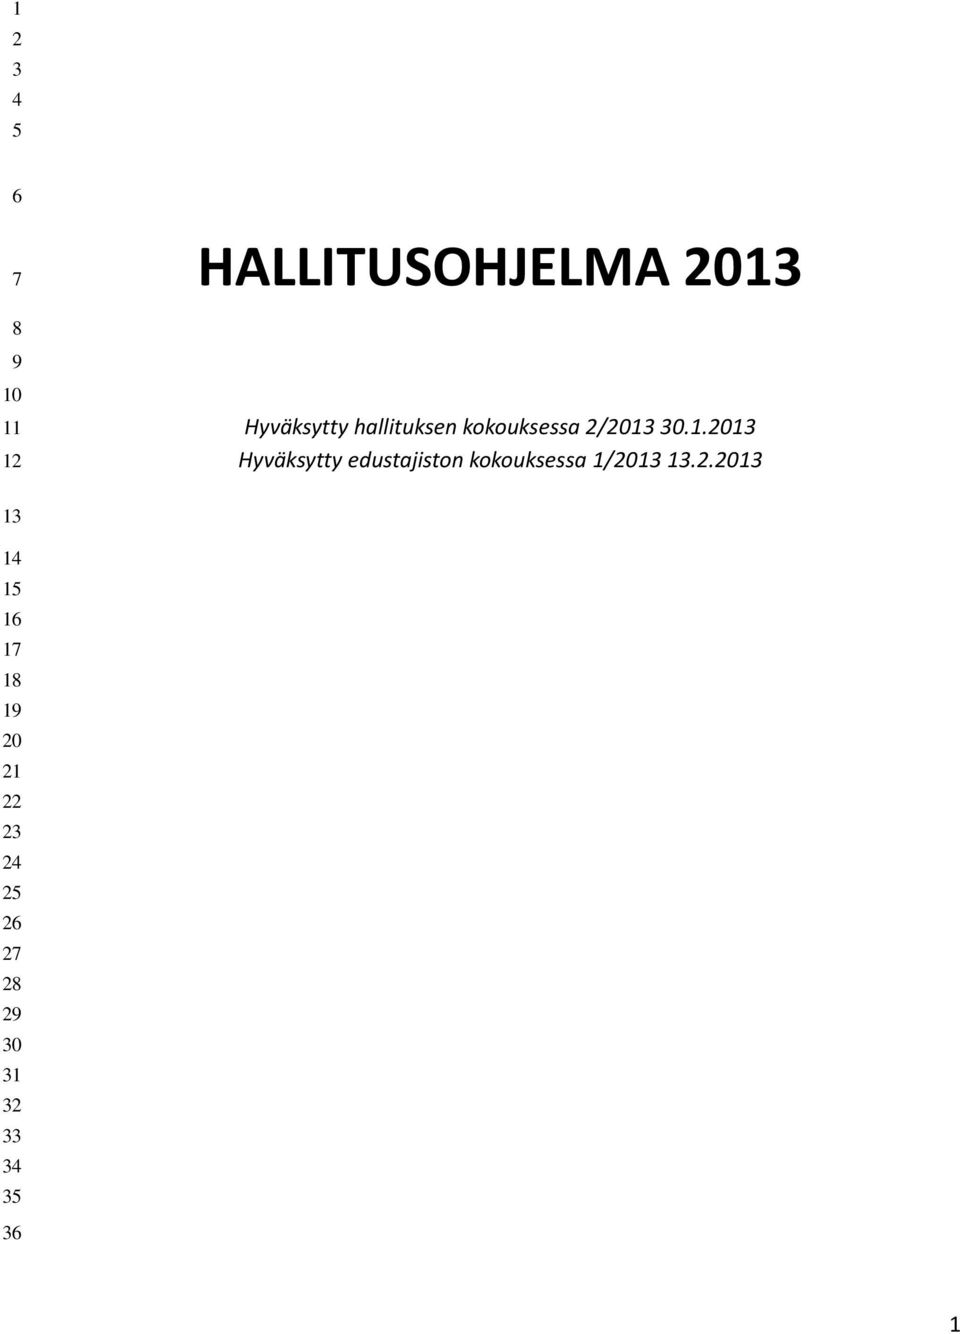 30.1.2013 Hyväksytty edustajiston kokouksessa 1/2013 13.